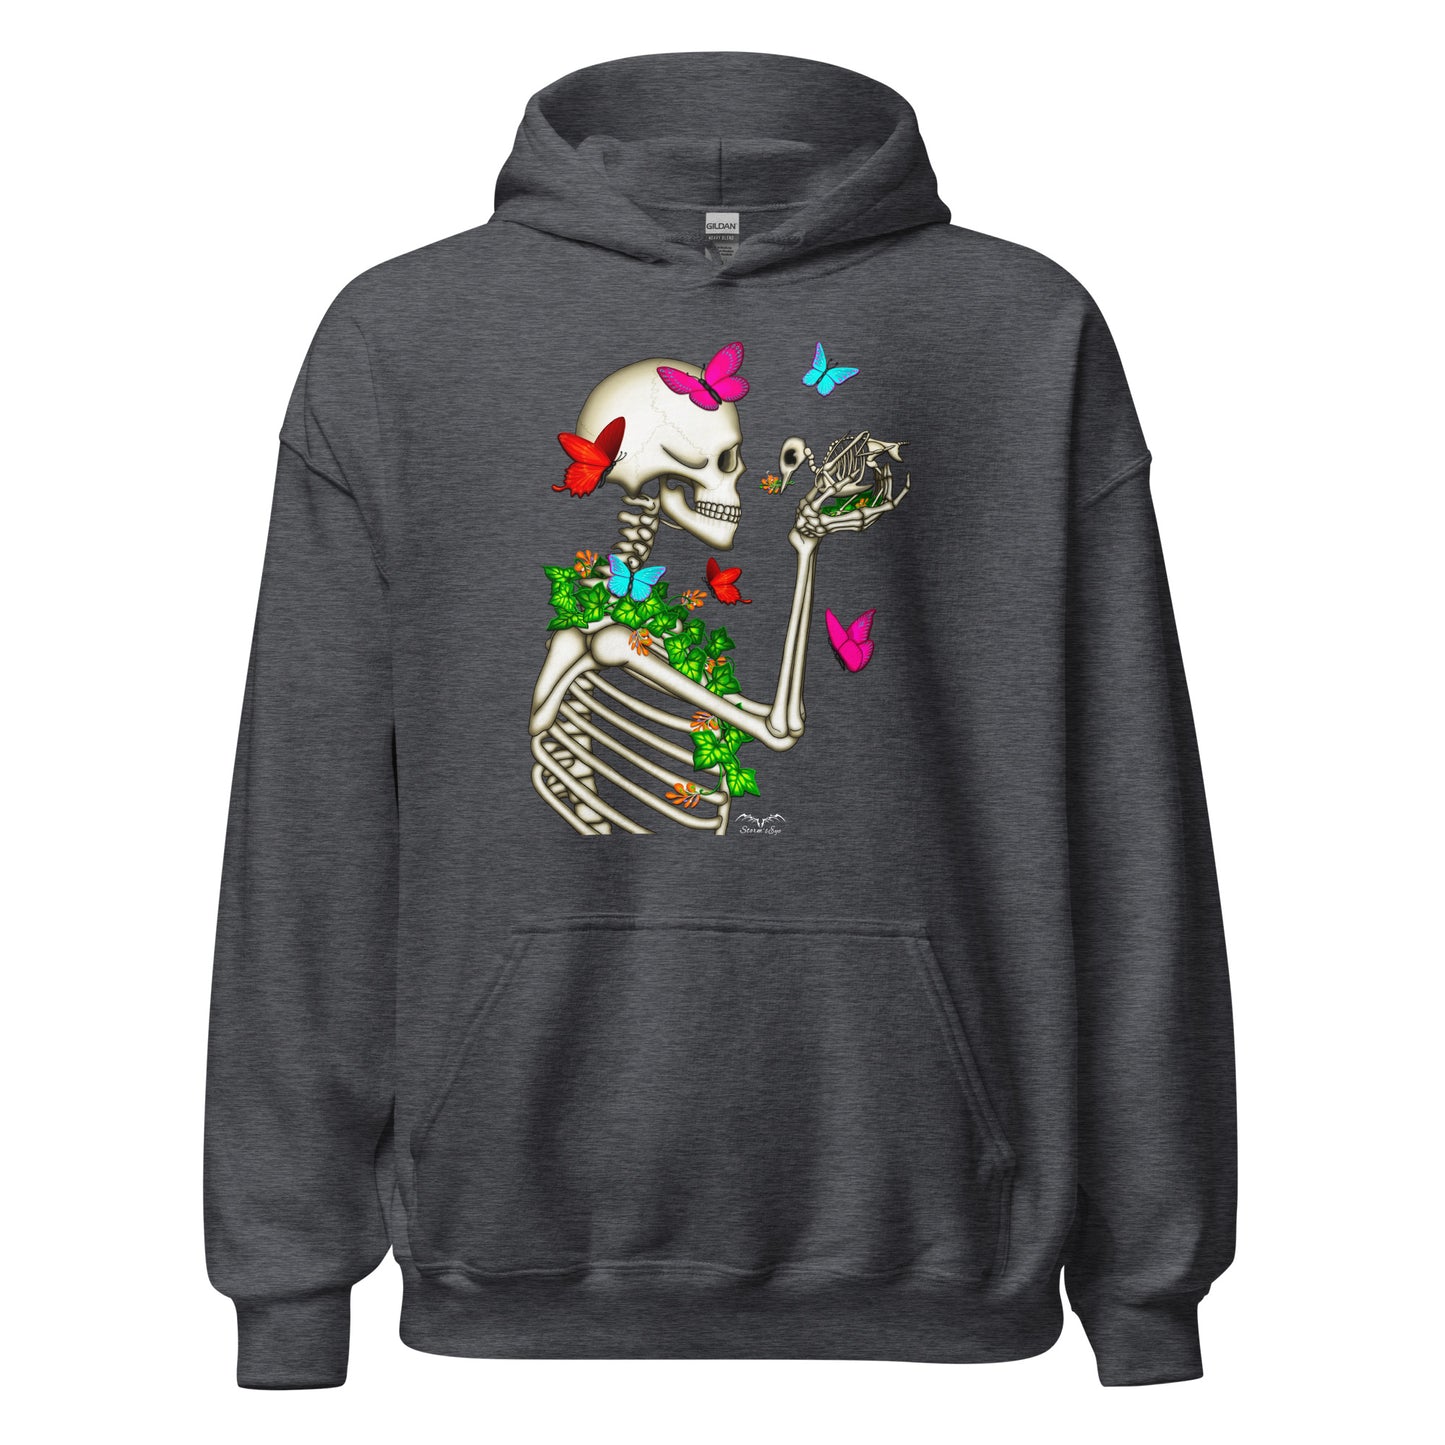 stormseye design skeleton and bird hoodie flat view dark heather